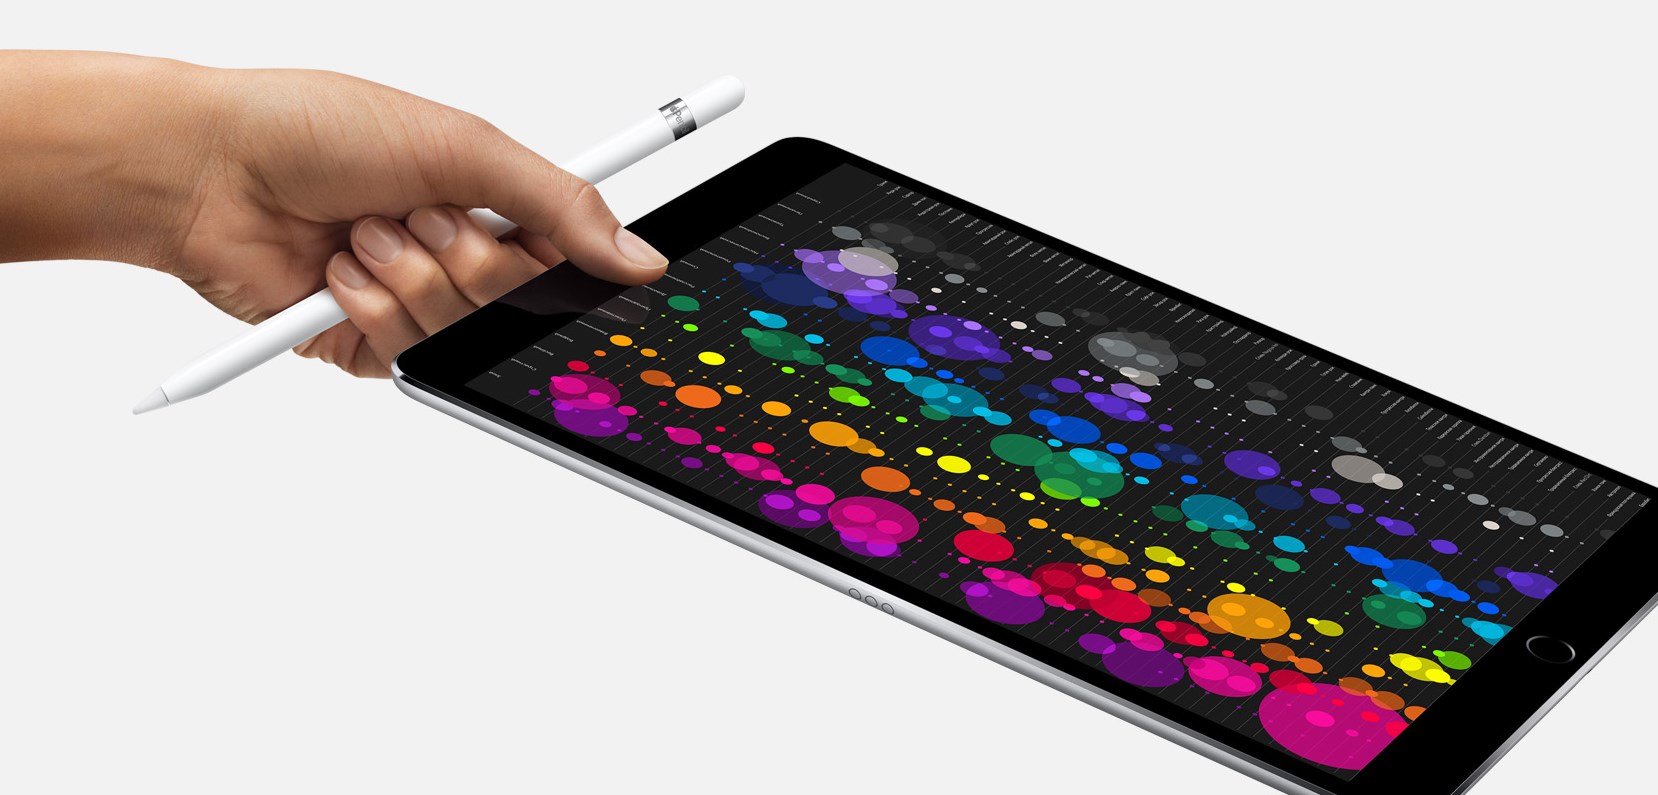 iPad Pro 10.5 - Любое дело сделается лучше.